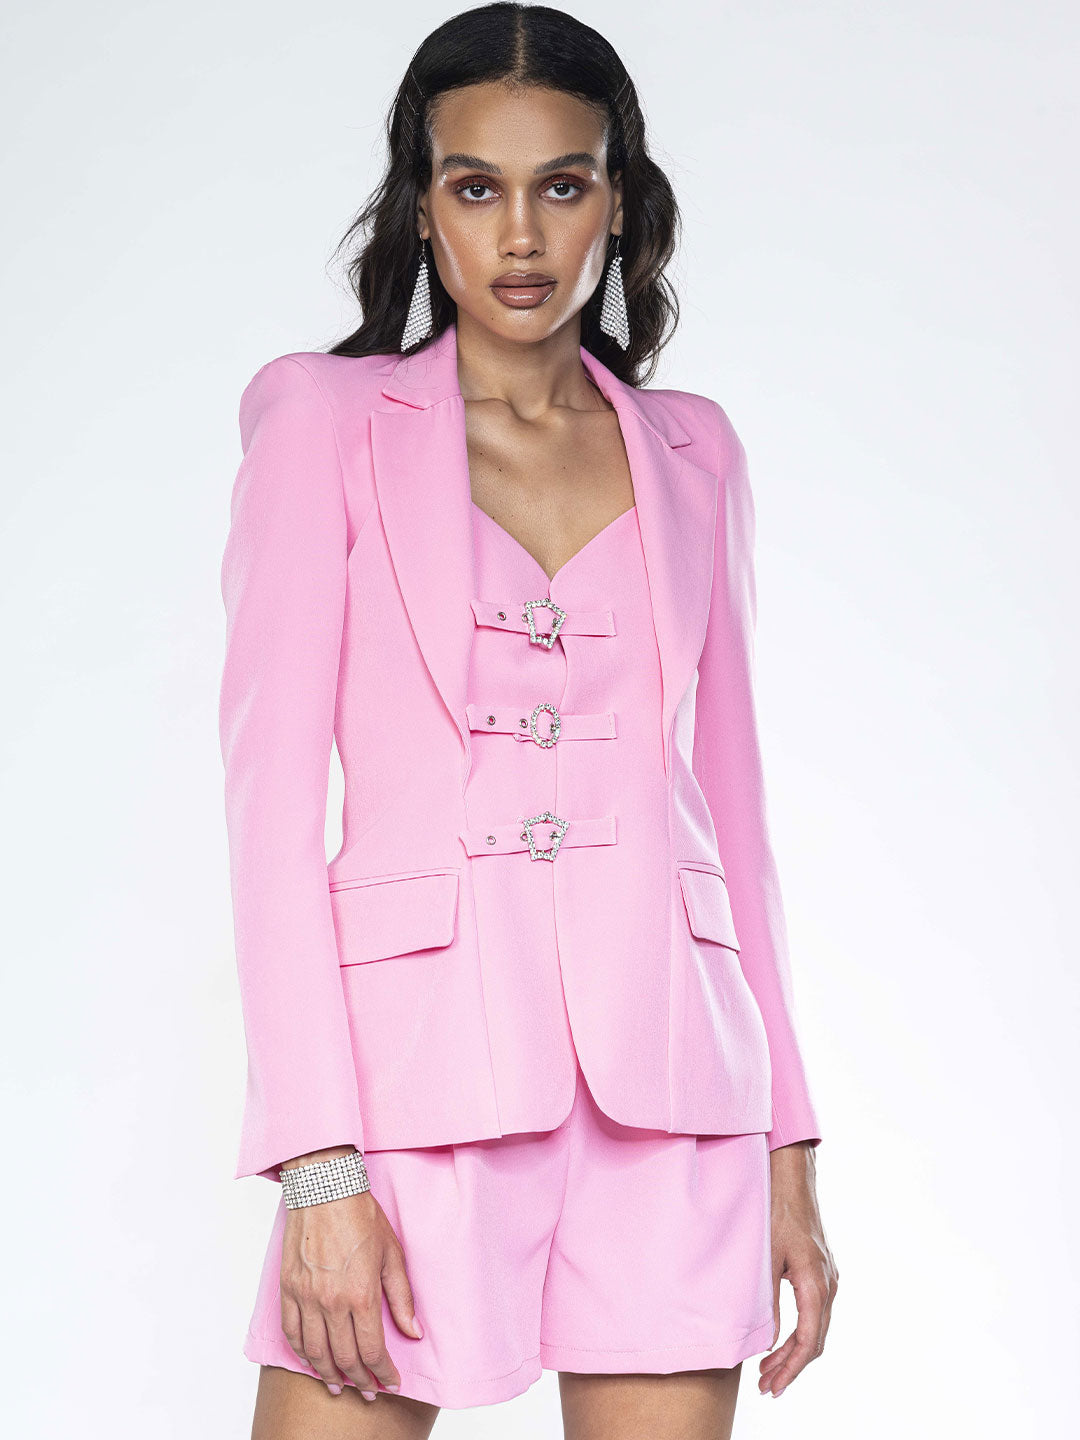 Matilde Couture giacca rosa con triplice fibbia con strass<BR/>